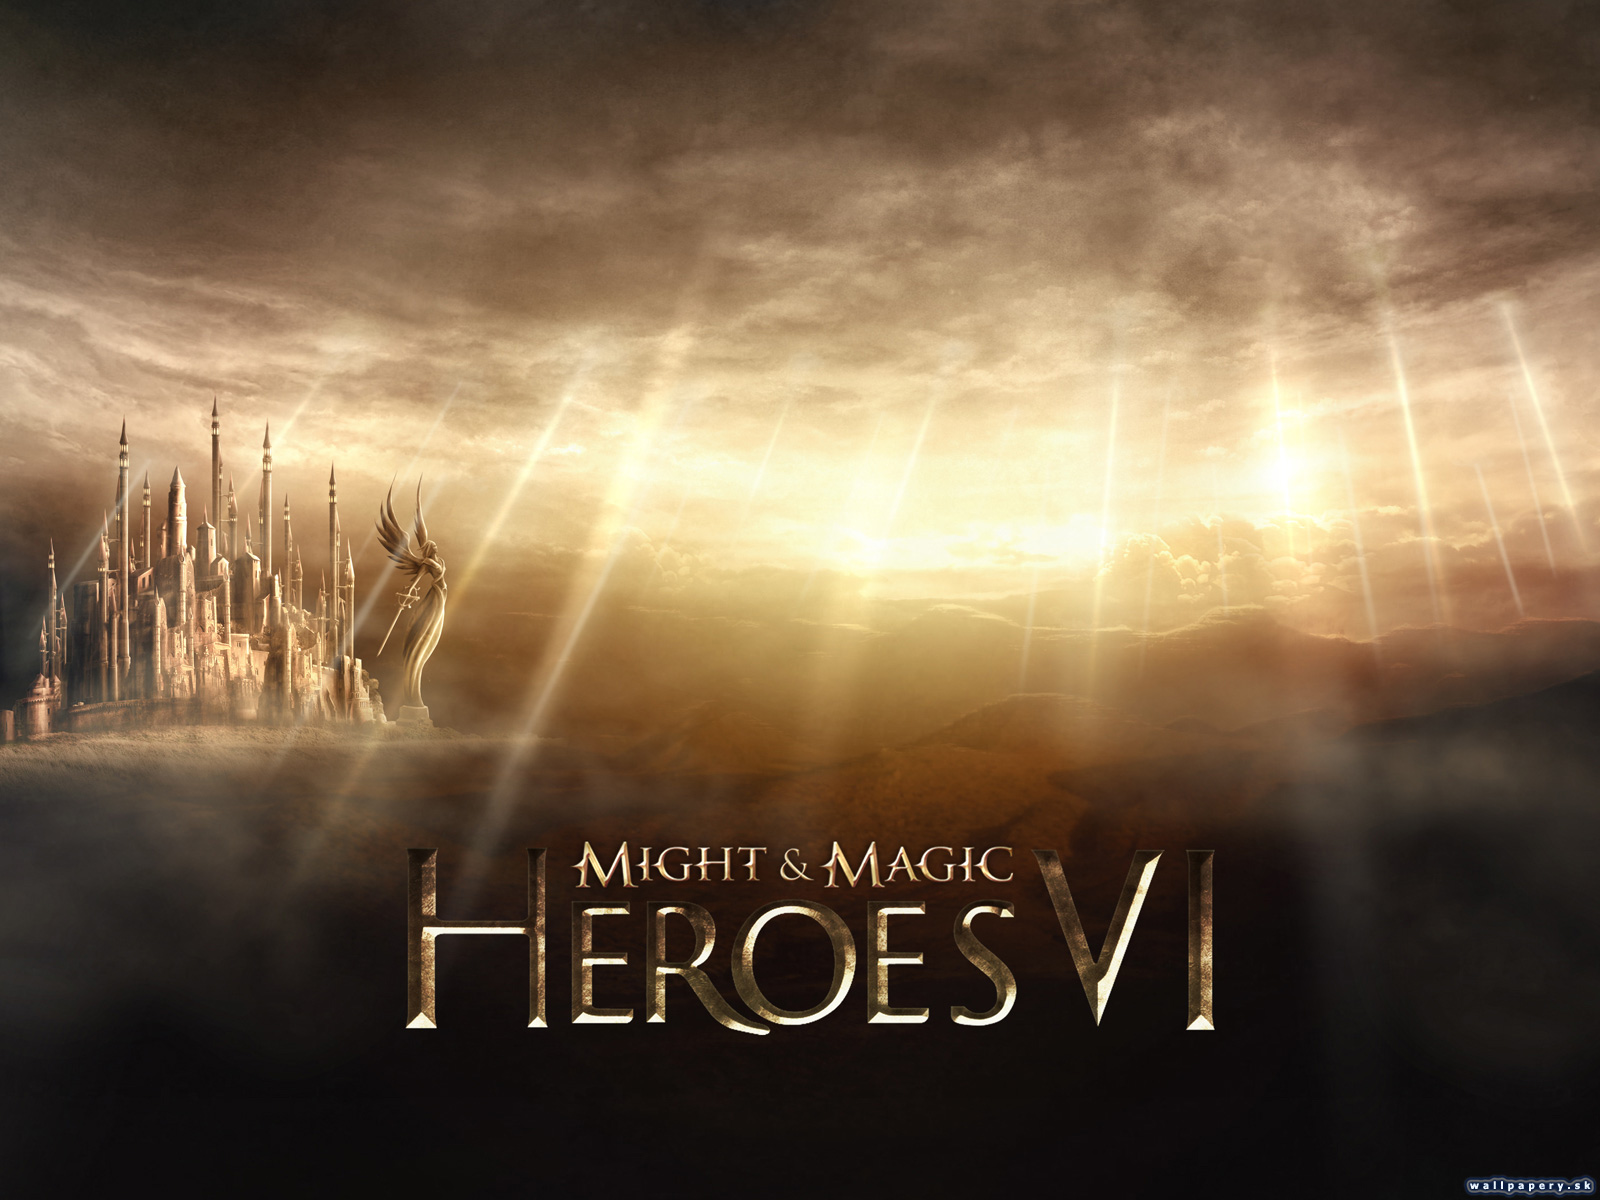 Might & Magic Heroes VI - wallpaper 3